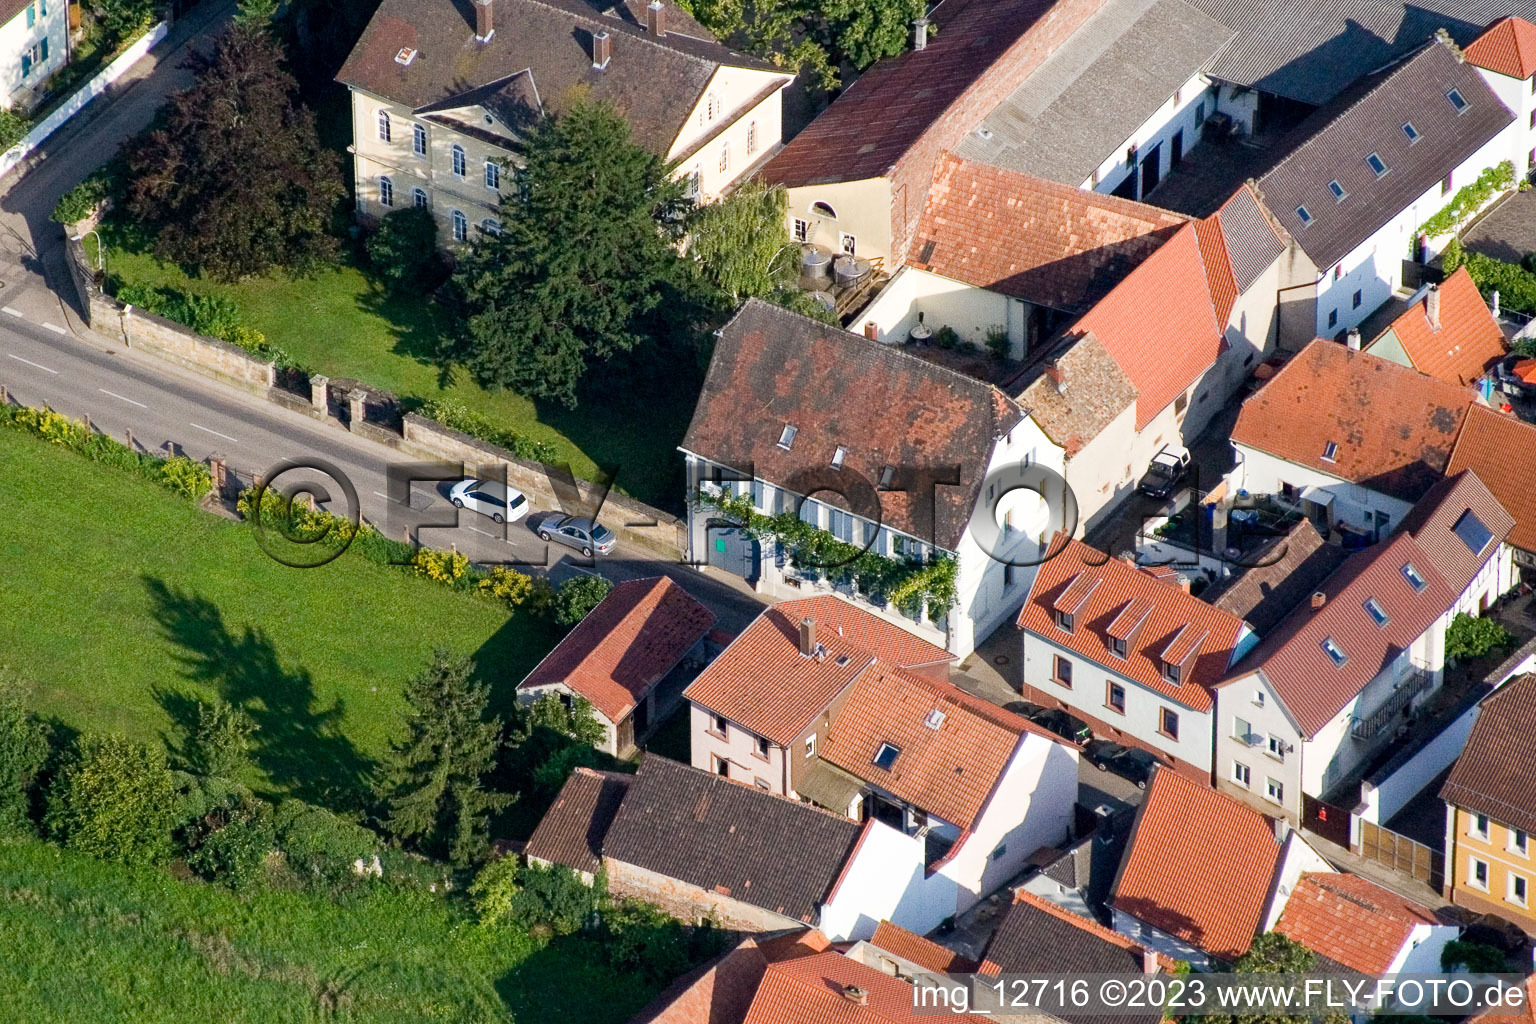 Großkarlbach im Bundesland Rheinland-Pfalz, Deutschland von einer Drohne aus